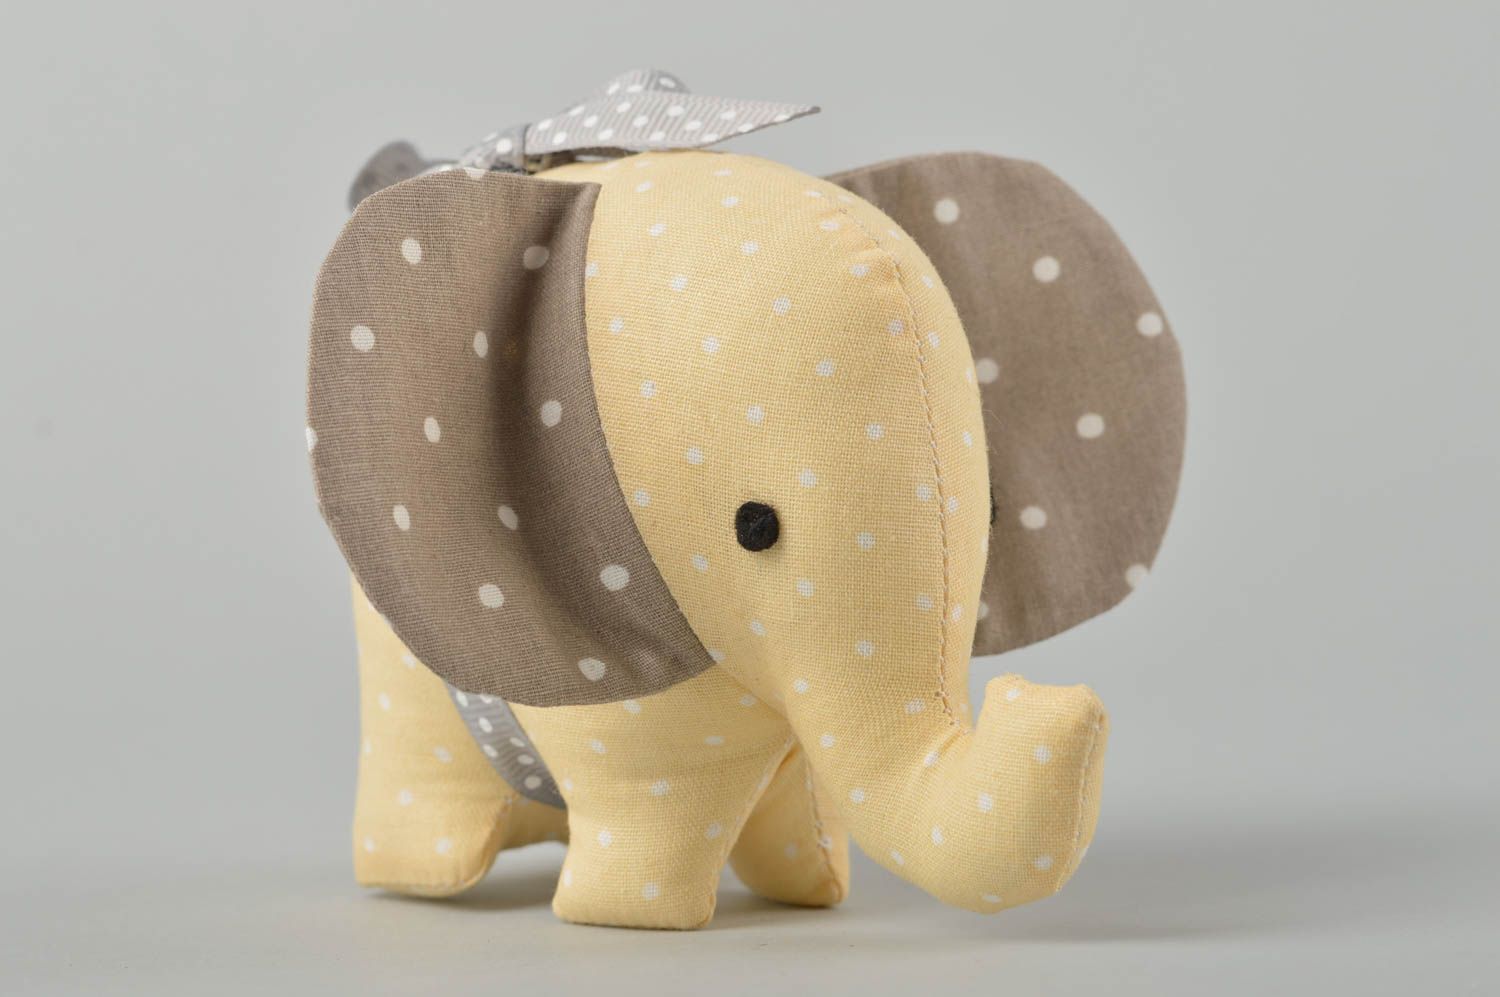 Игрушка слон ручной работы игрушка животное интересный подарок декор для дома  фото 2